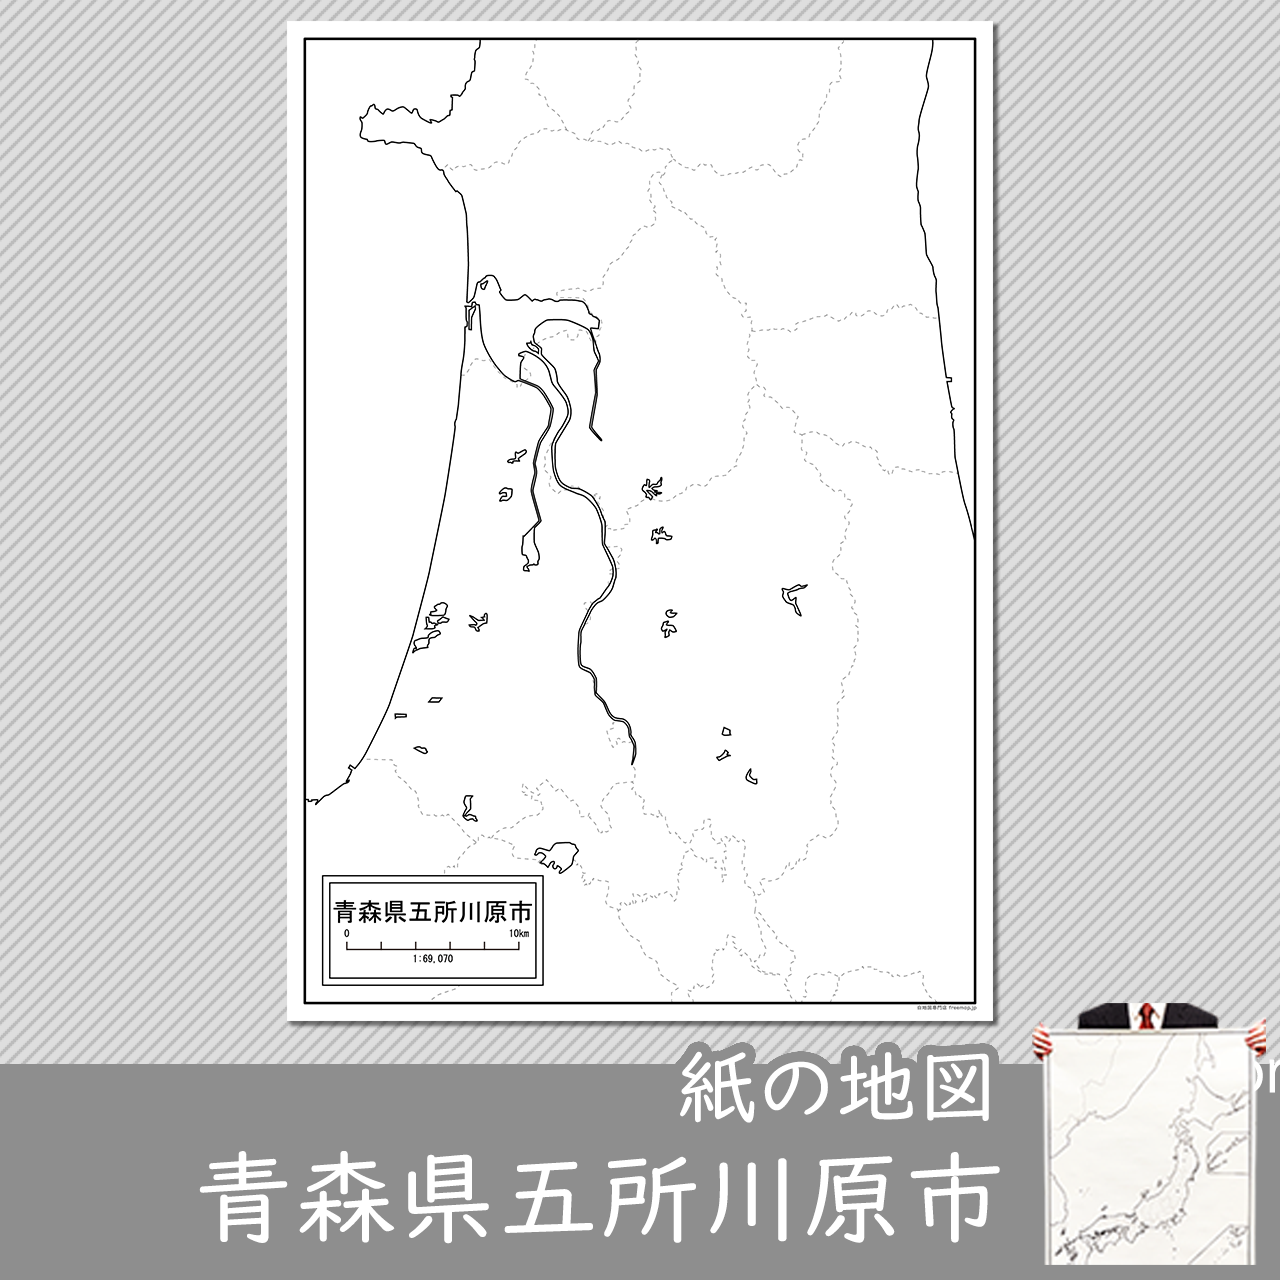 五所川原市の紙の白地図のサムネイル